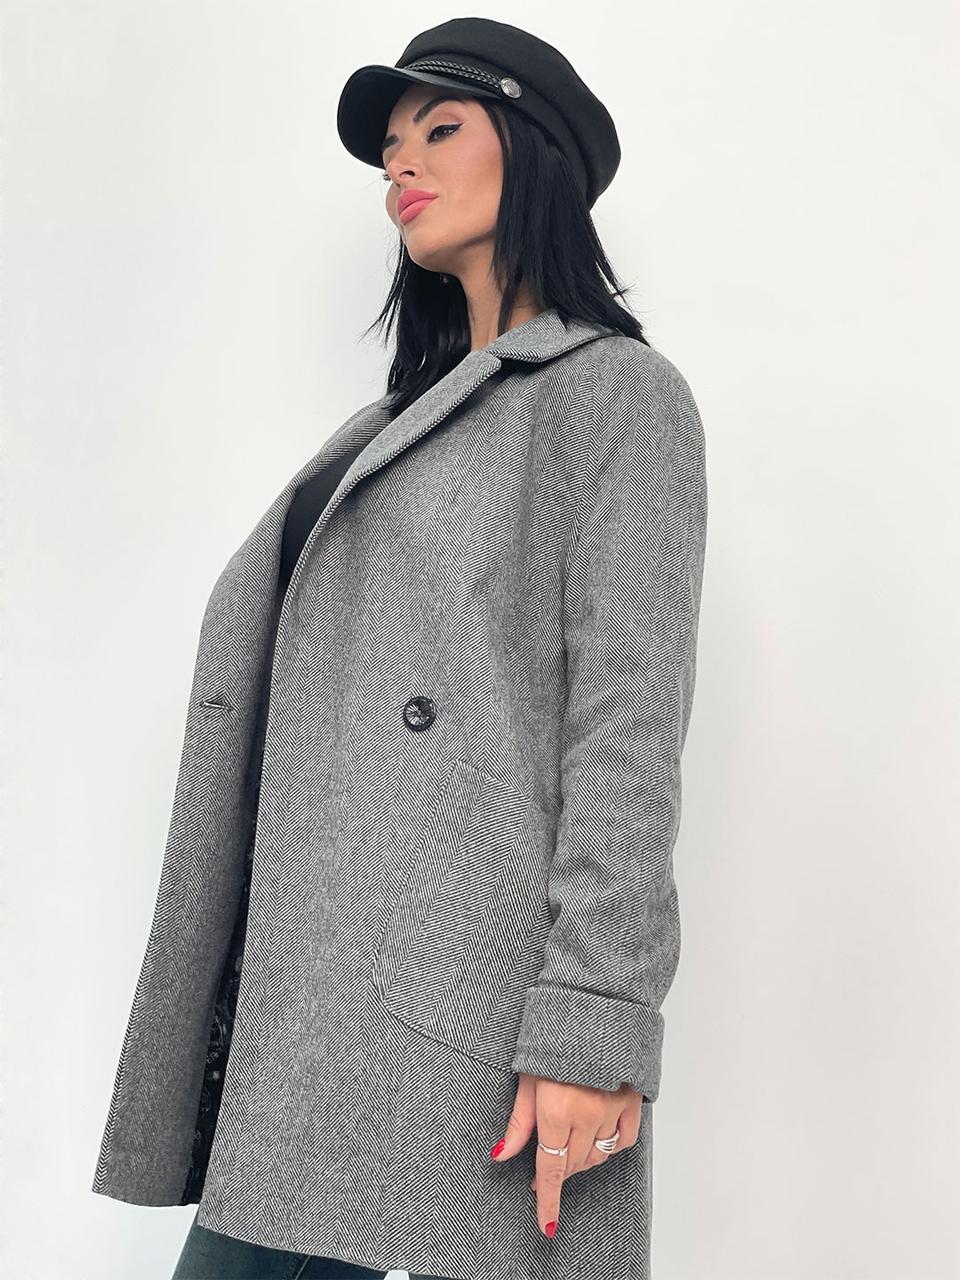 Жіноче кашемірове пальто "Forest"| Норма